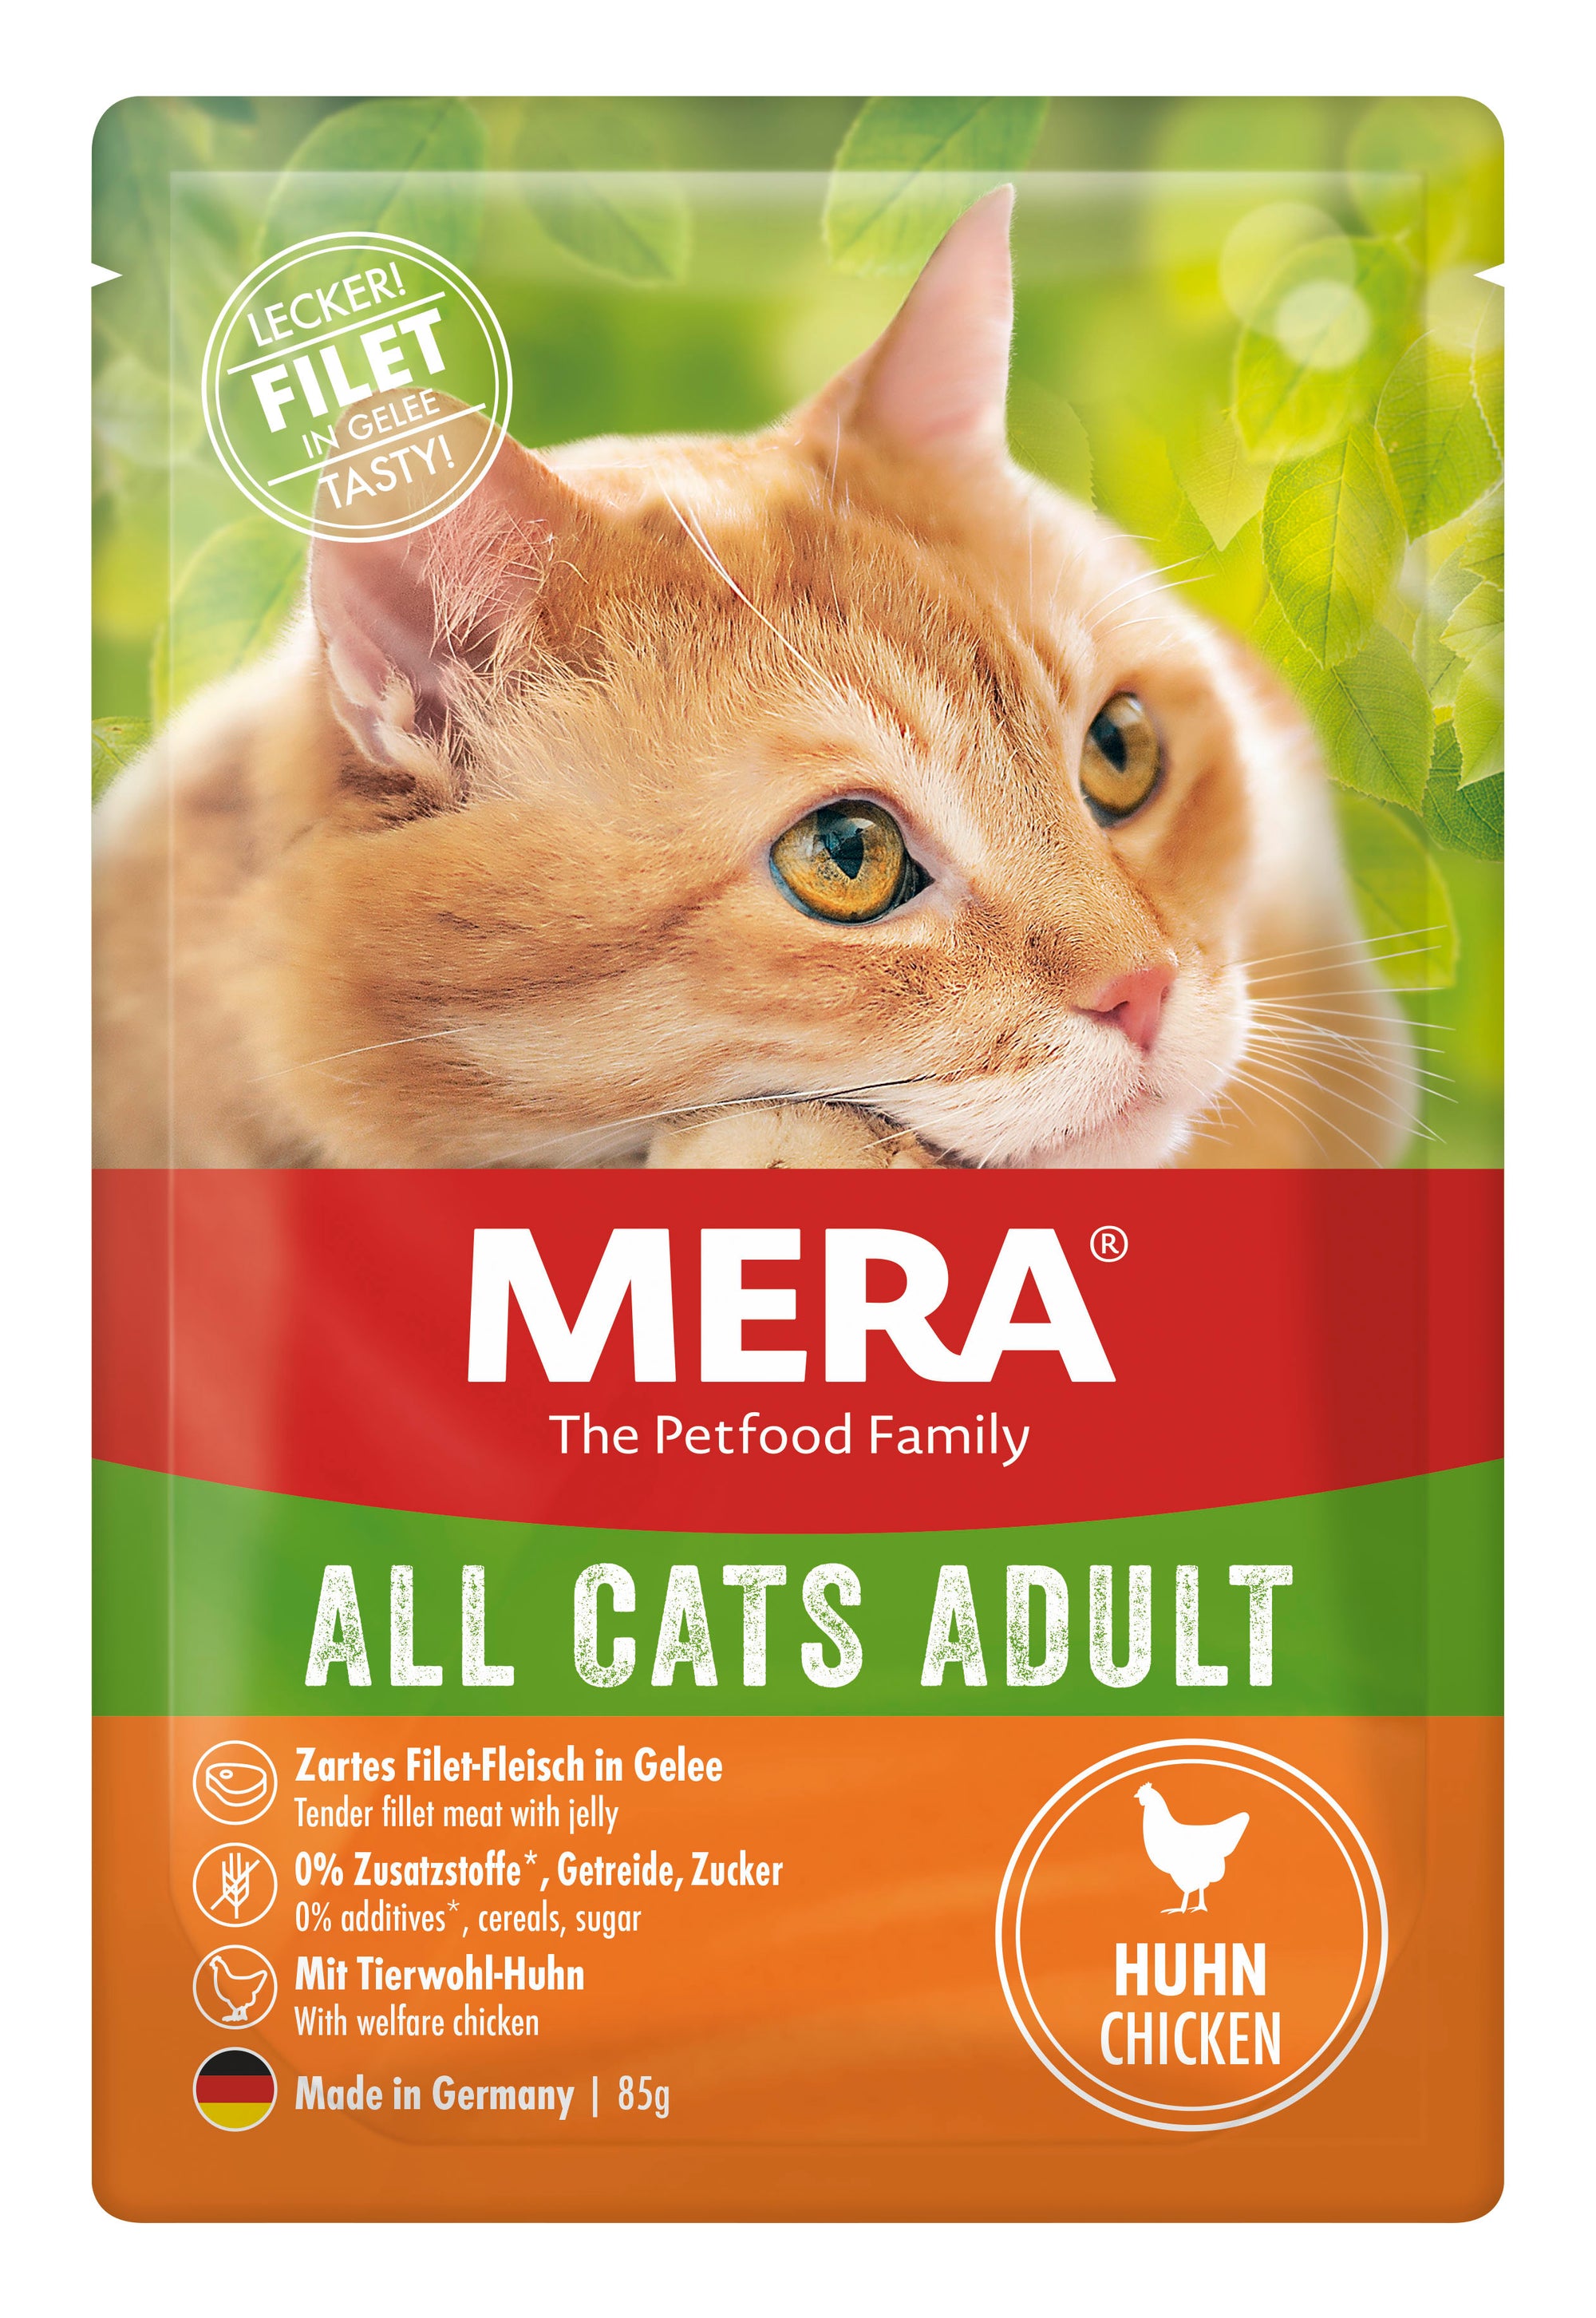 Artikel mit dem Namen MERA Cats Adult Huhn im Shop von zoo.de , dem Onlineshop für nachhaltiges Hundefutter und Katzenfutter.